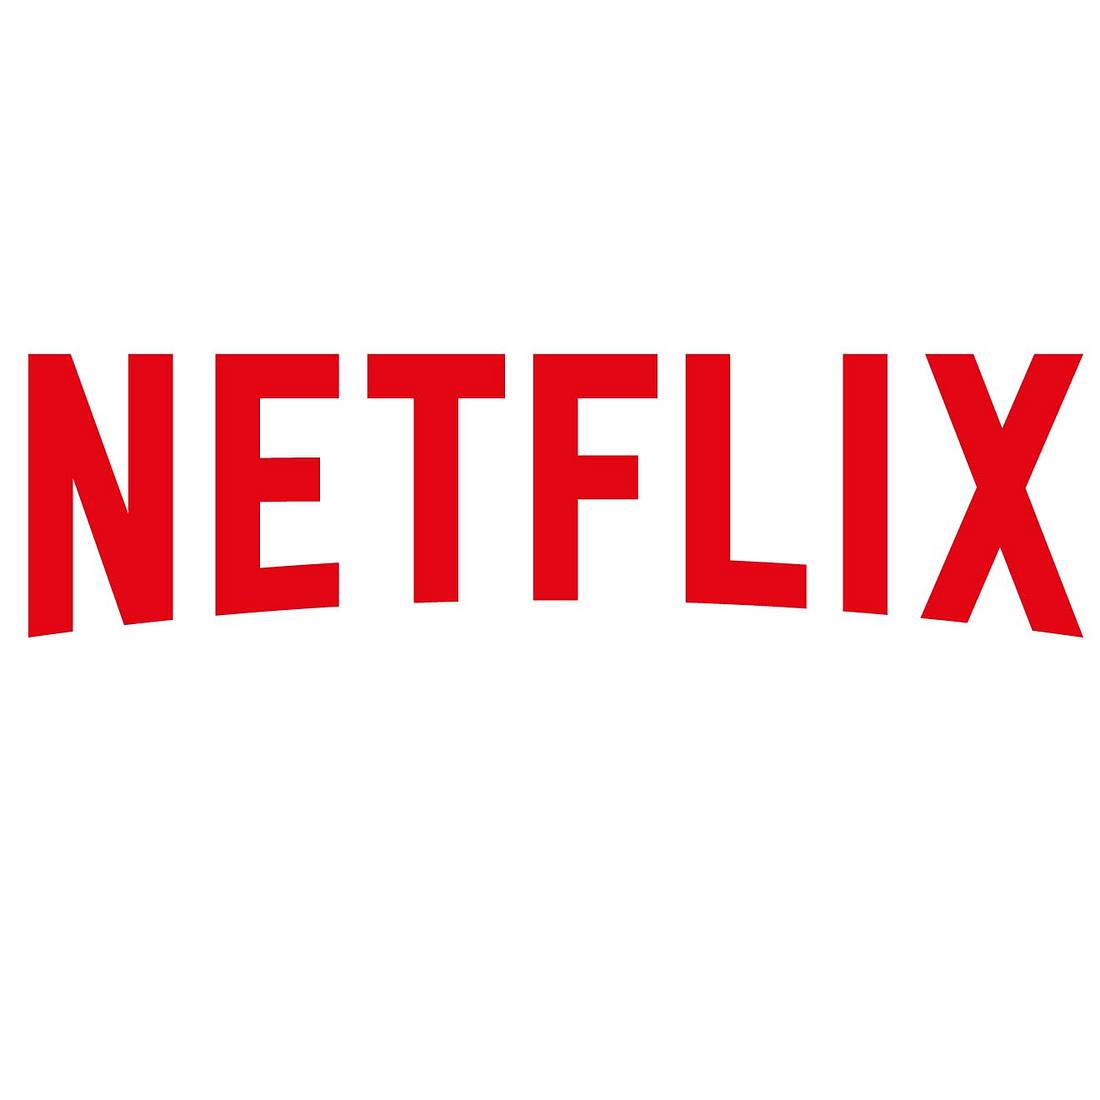 Netflix Filme 2021: Krasse Planungen veröffentlicht! ?